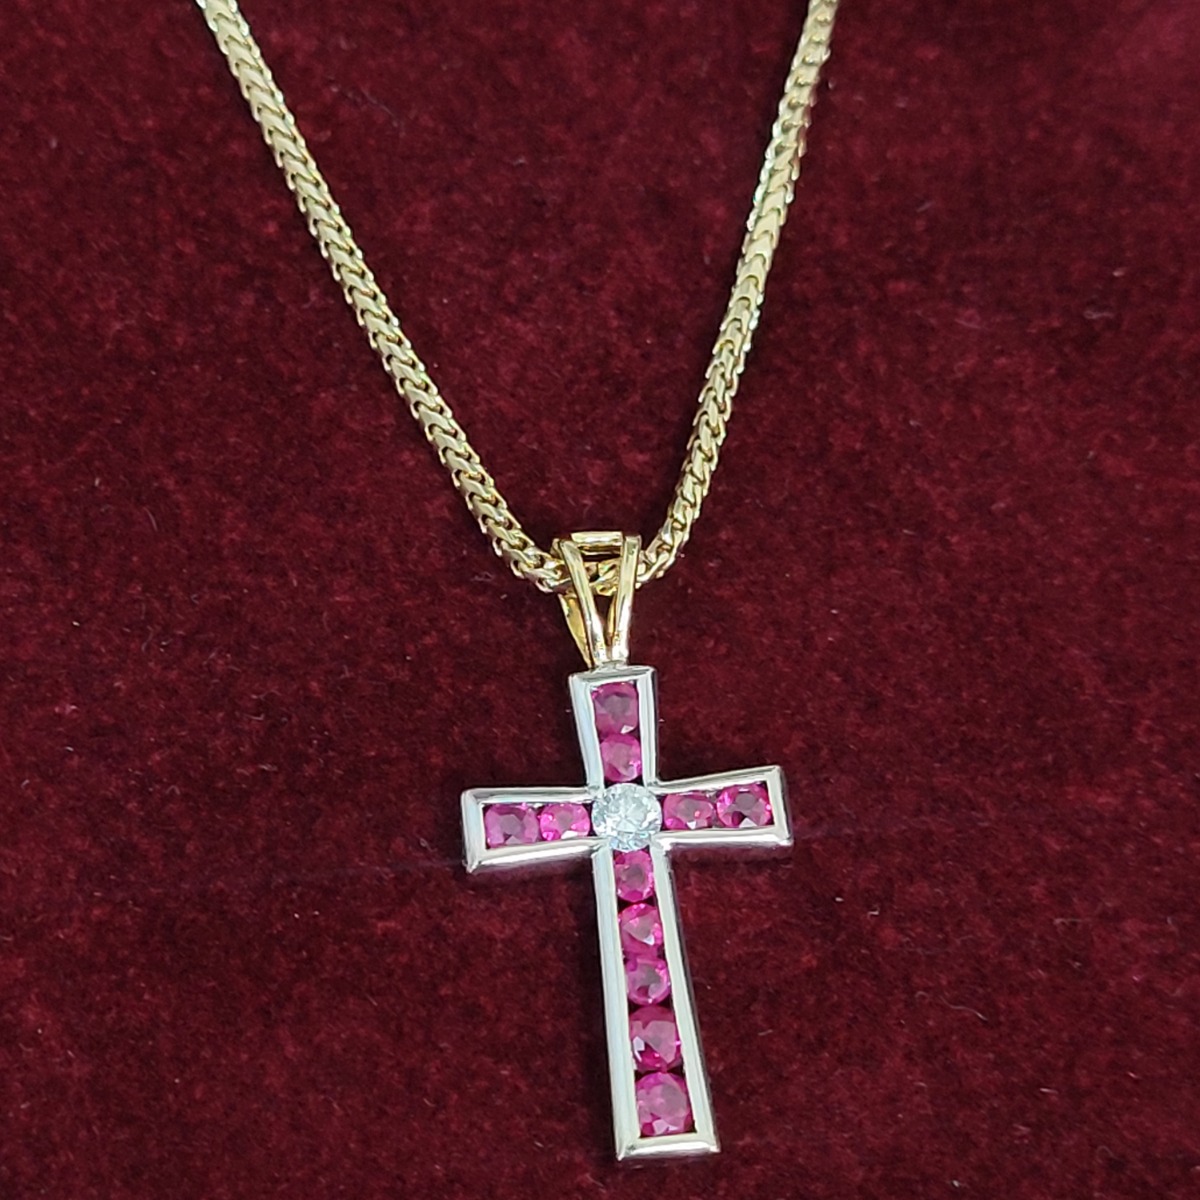 Vintage 18ct Gold Cross Chain Necklace - felt